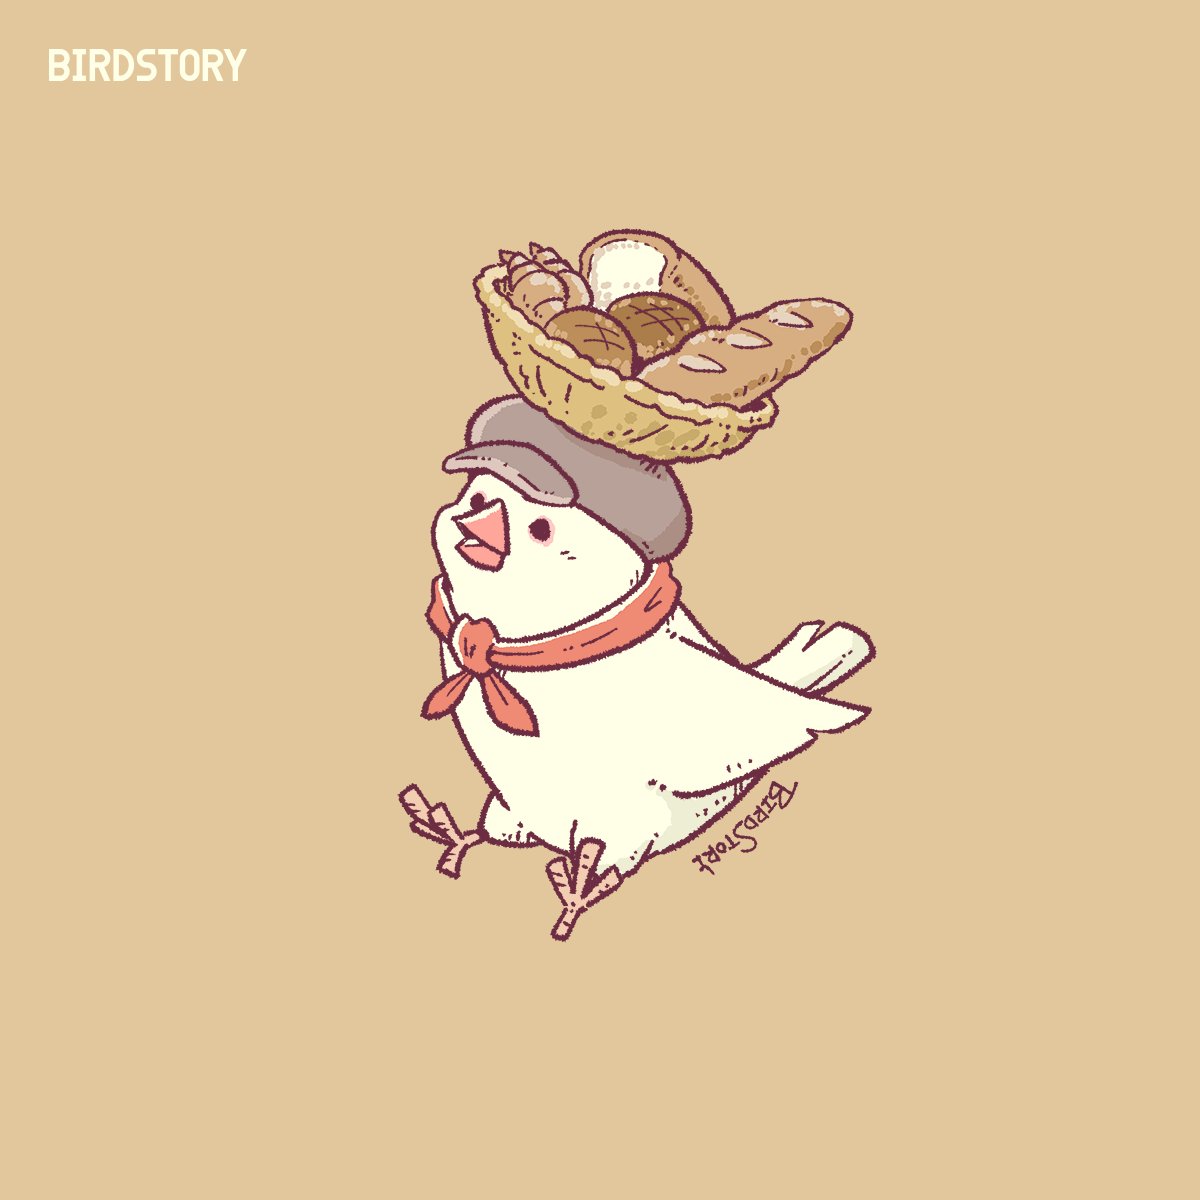 「おはようございます。本日は4月12日、パンの記念日とのことです#BIRDSTOR」|BIRDSTORYのイラスト